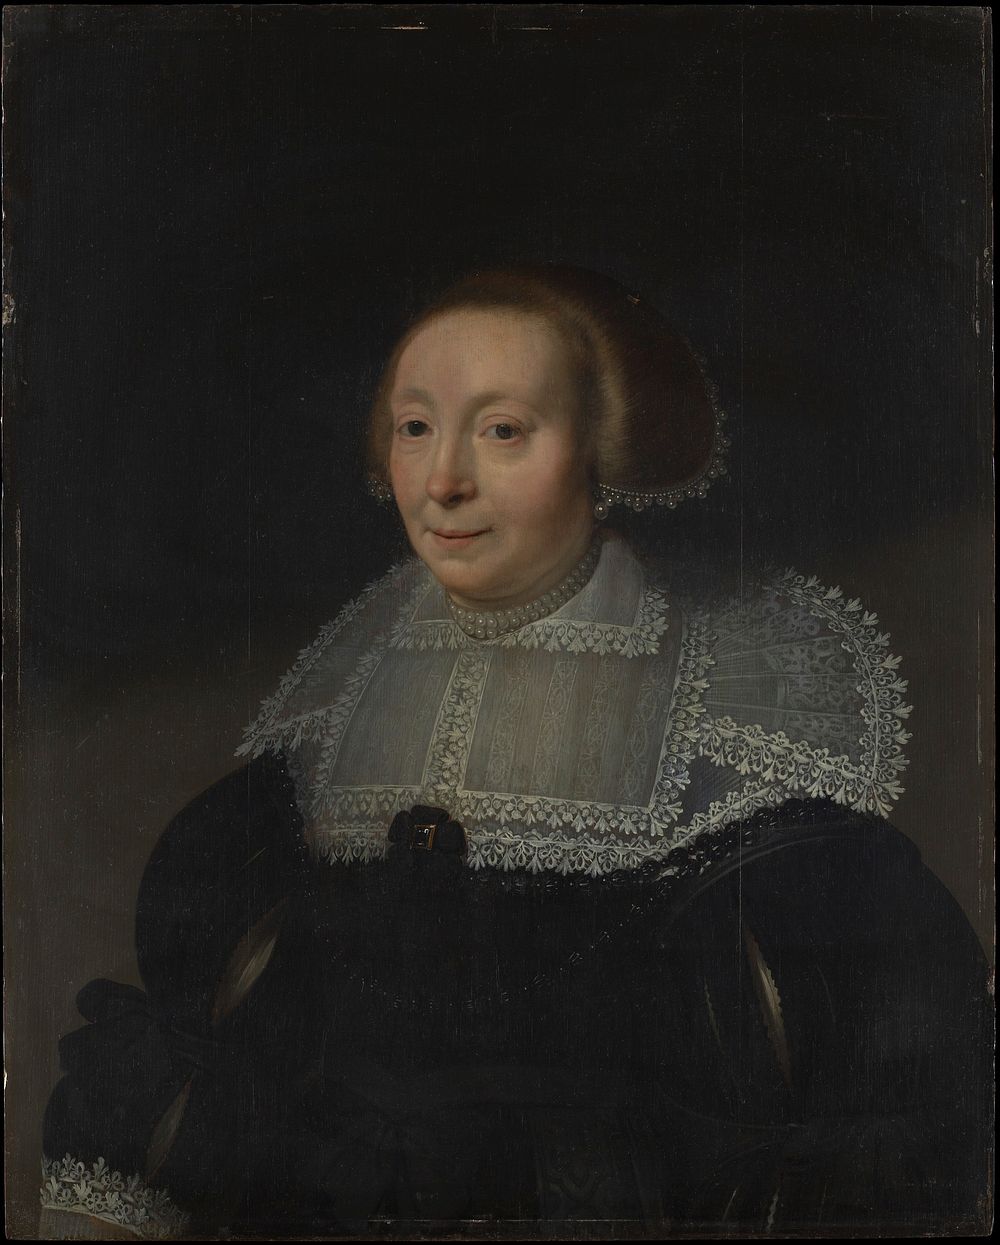 Portrait of a Woman with a Lace Collar by Michiel Jansz. van Mierevelt